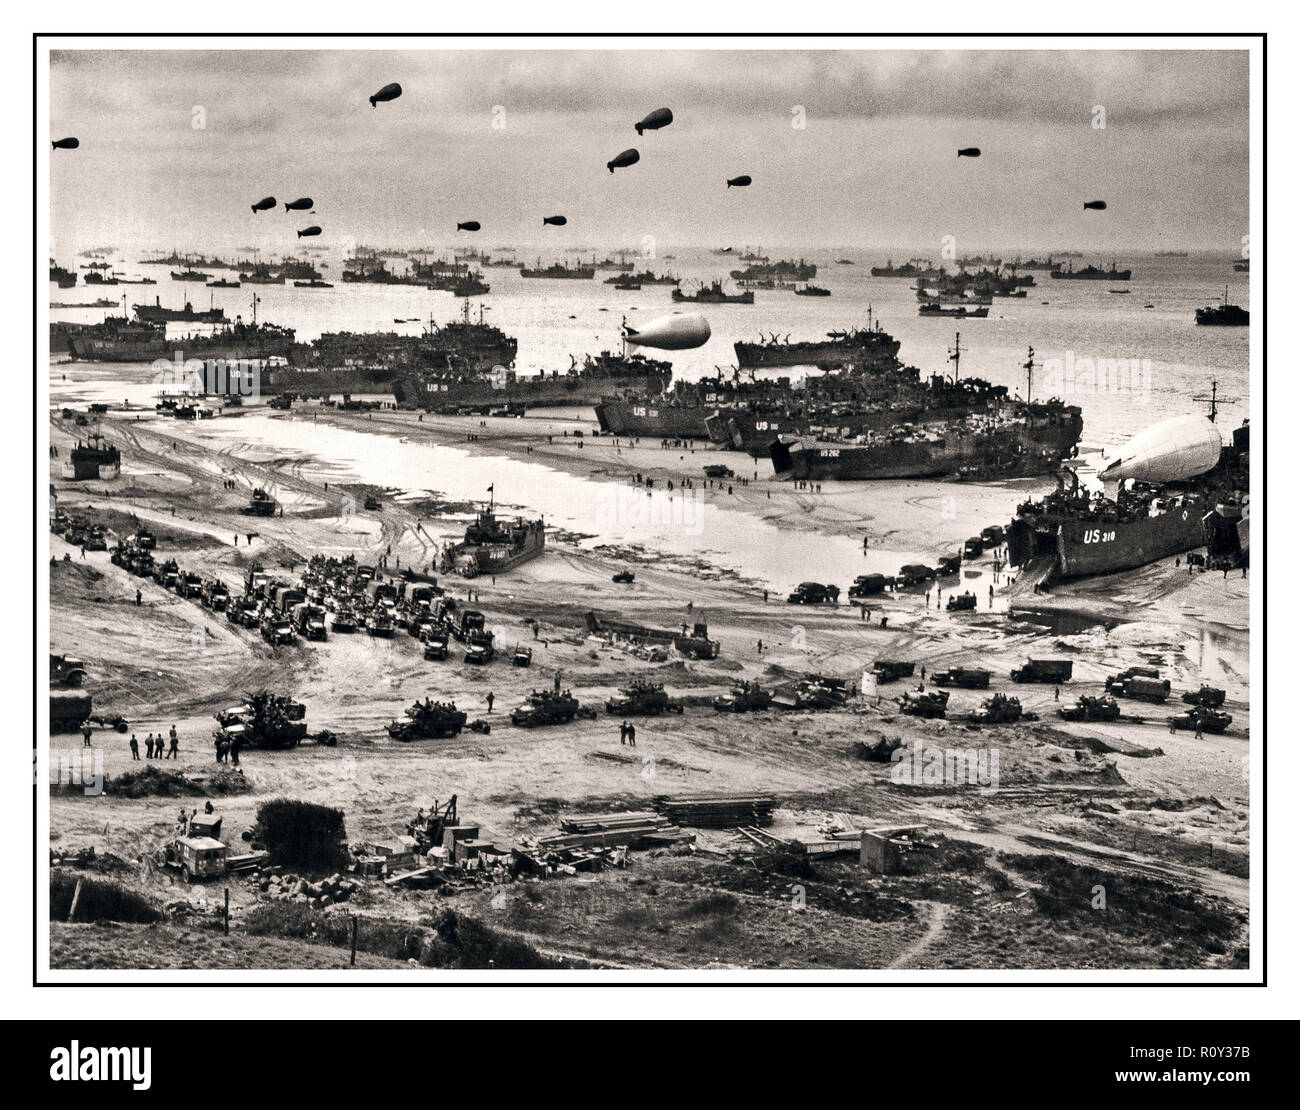 OMAHA BEACH D-Day Normandie WW2 B&W DROIT D jour Plus 1 LCT Landing Craft Tank avec des ballons de barrage à flot, le déchargement des fournitures sur Omaha pour les petits à partir de la normandie. Juin 1944 Banque D'Images